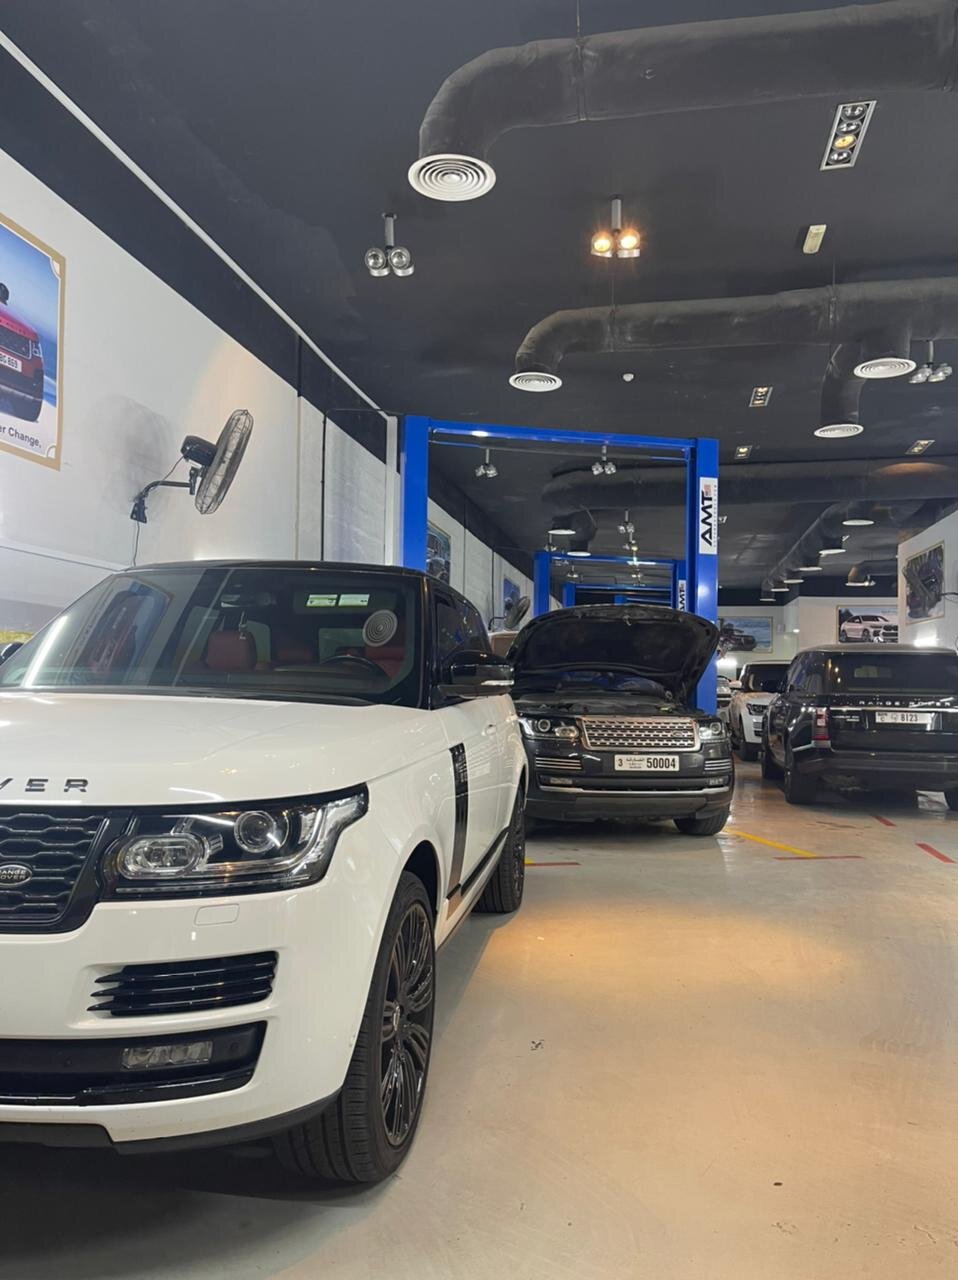 Range Rover Repair Center In Dubai